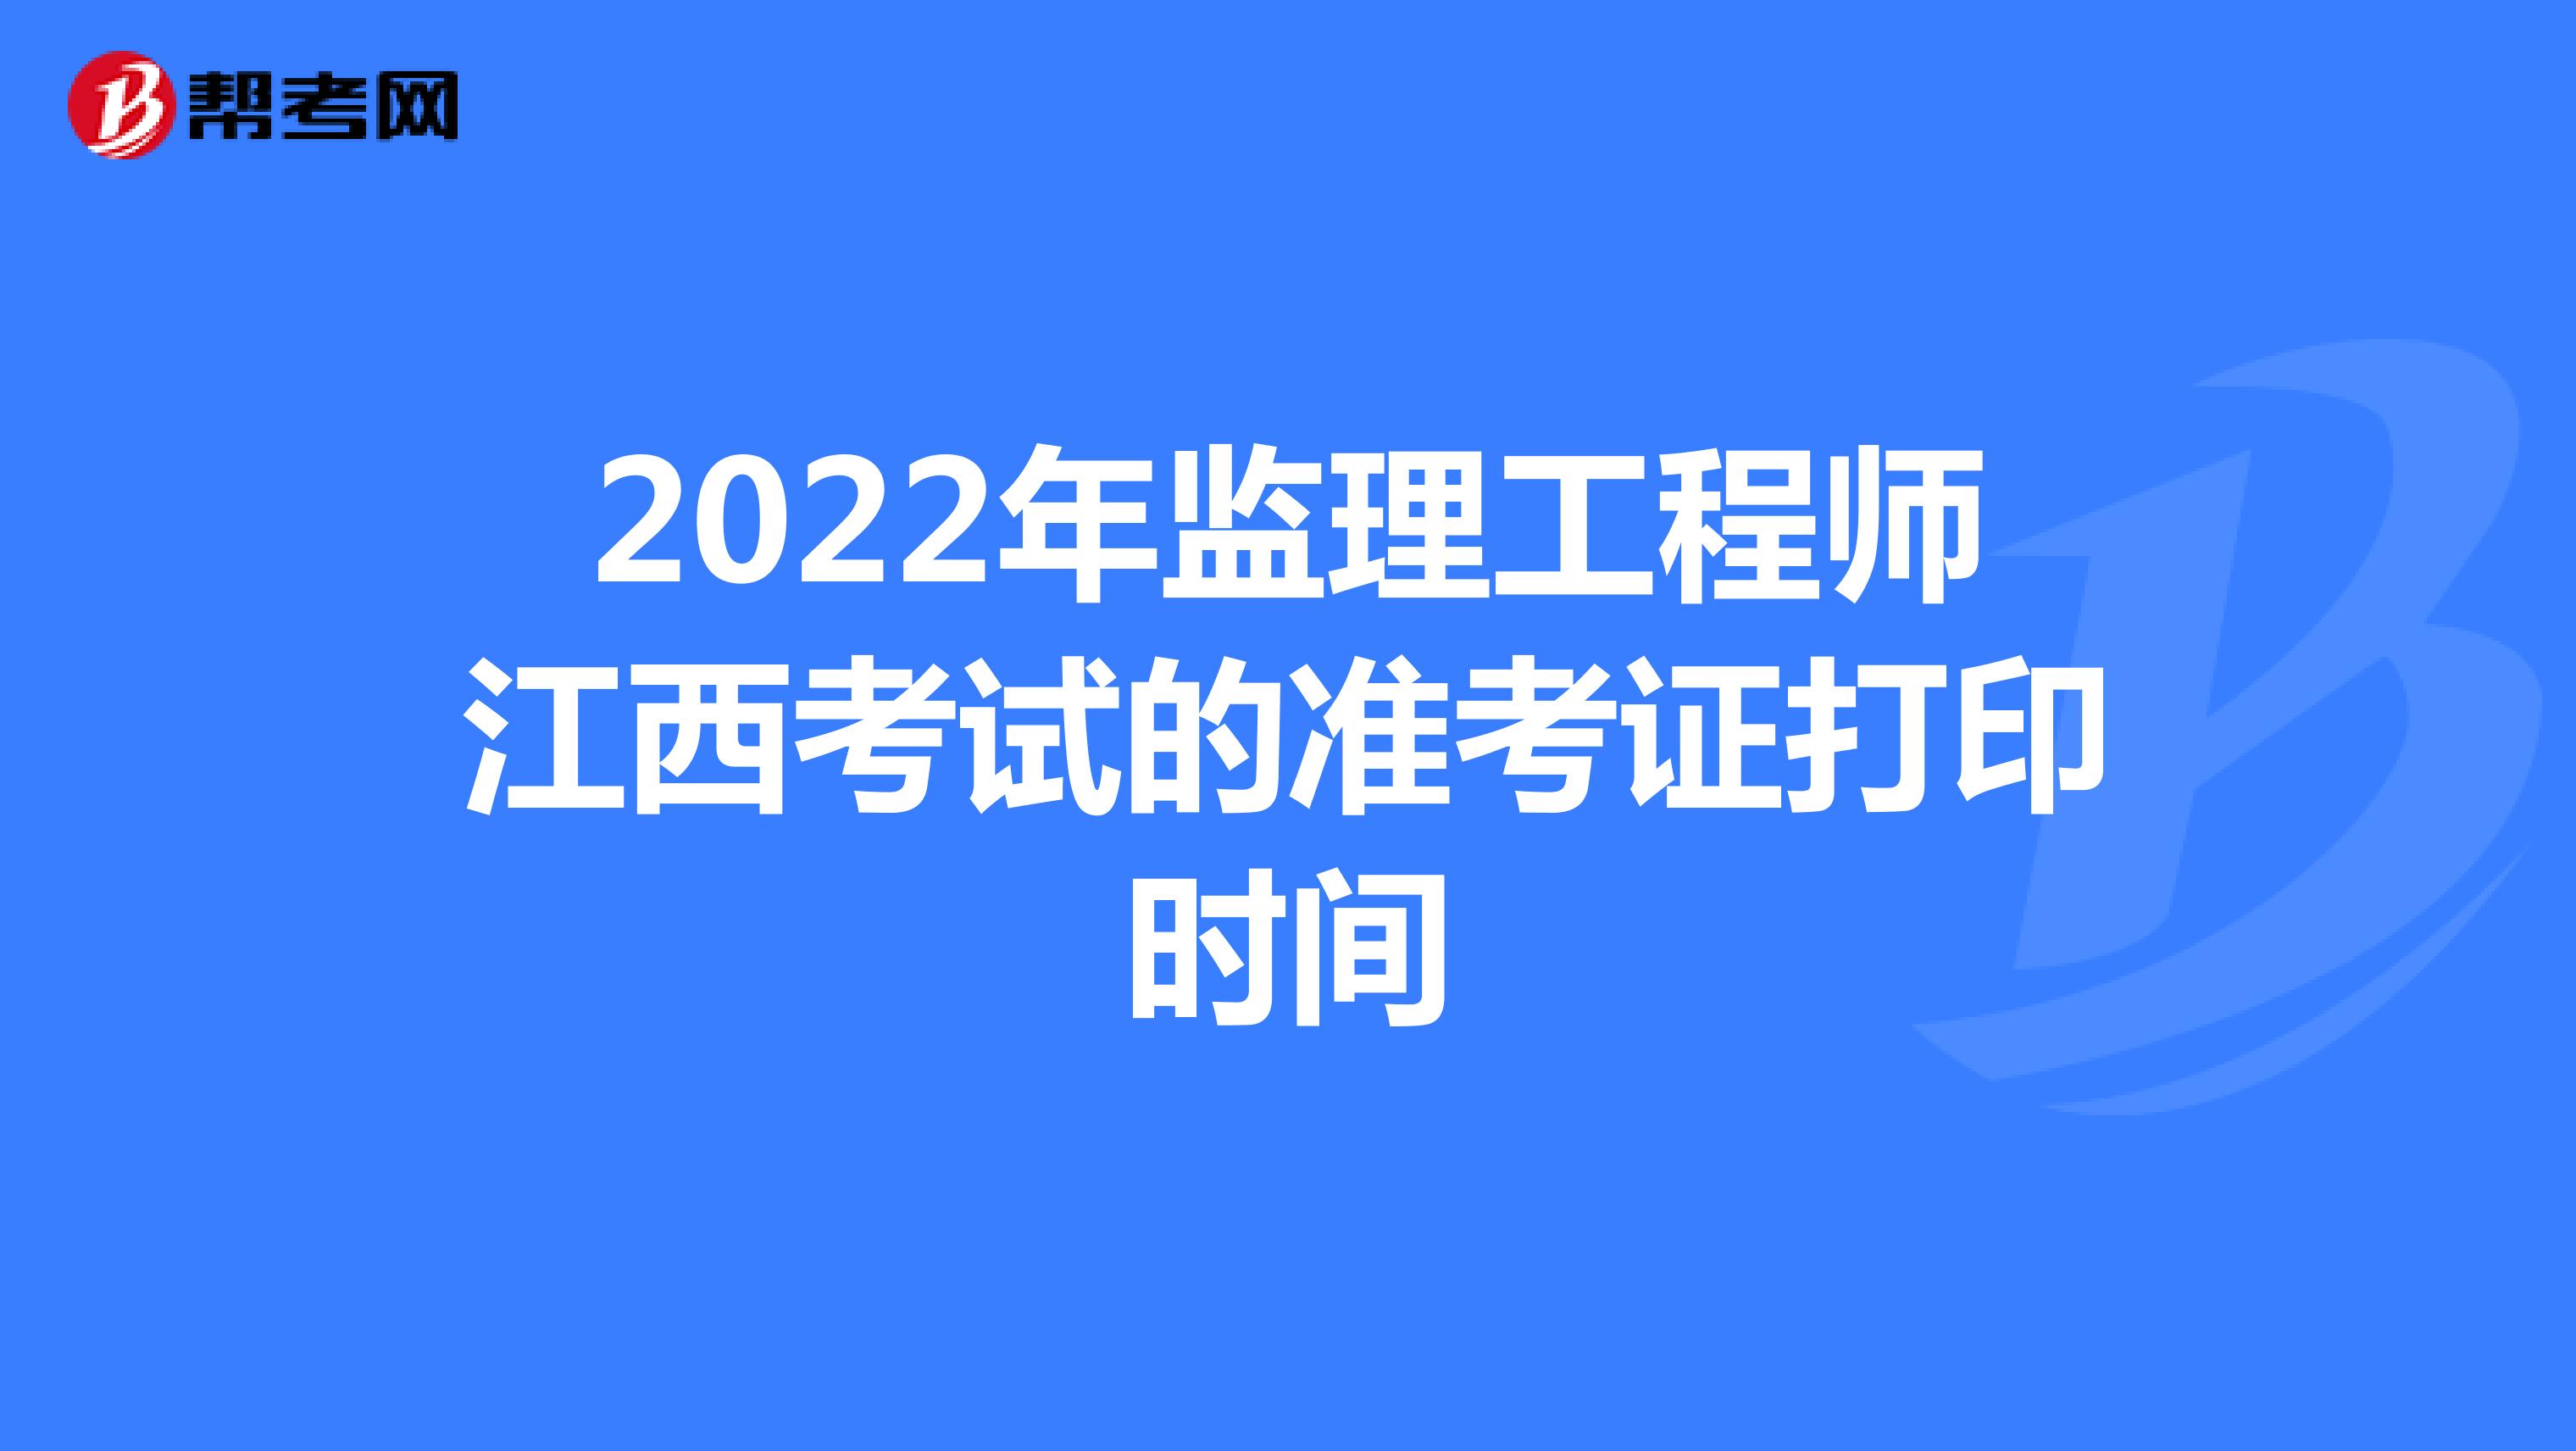 2022年监理工程师江西考试的准考证打印时间